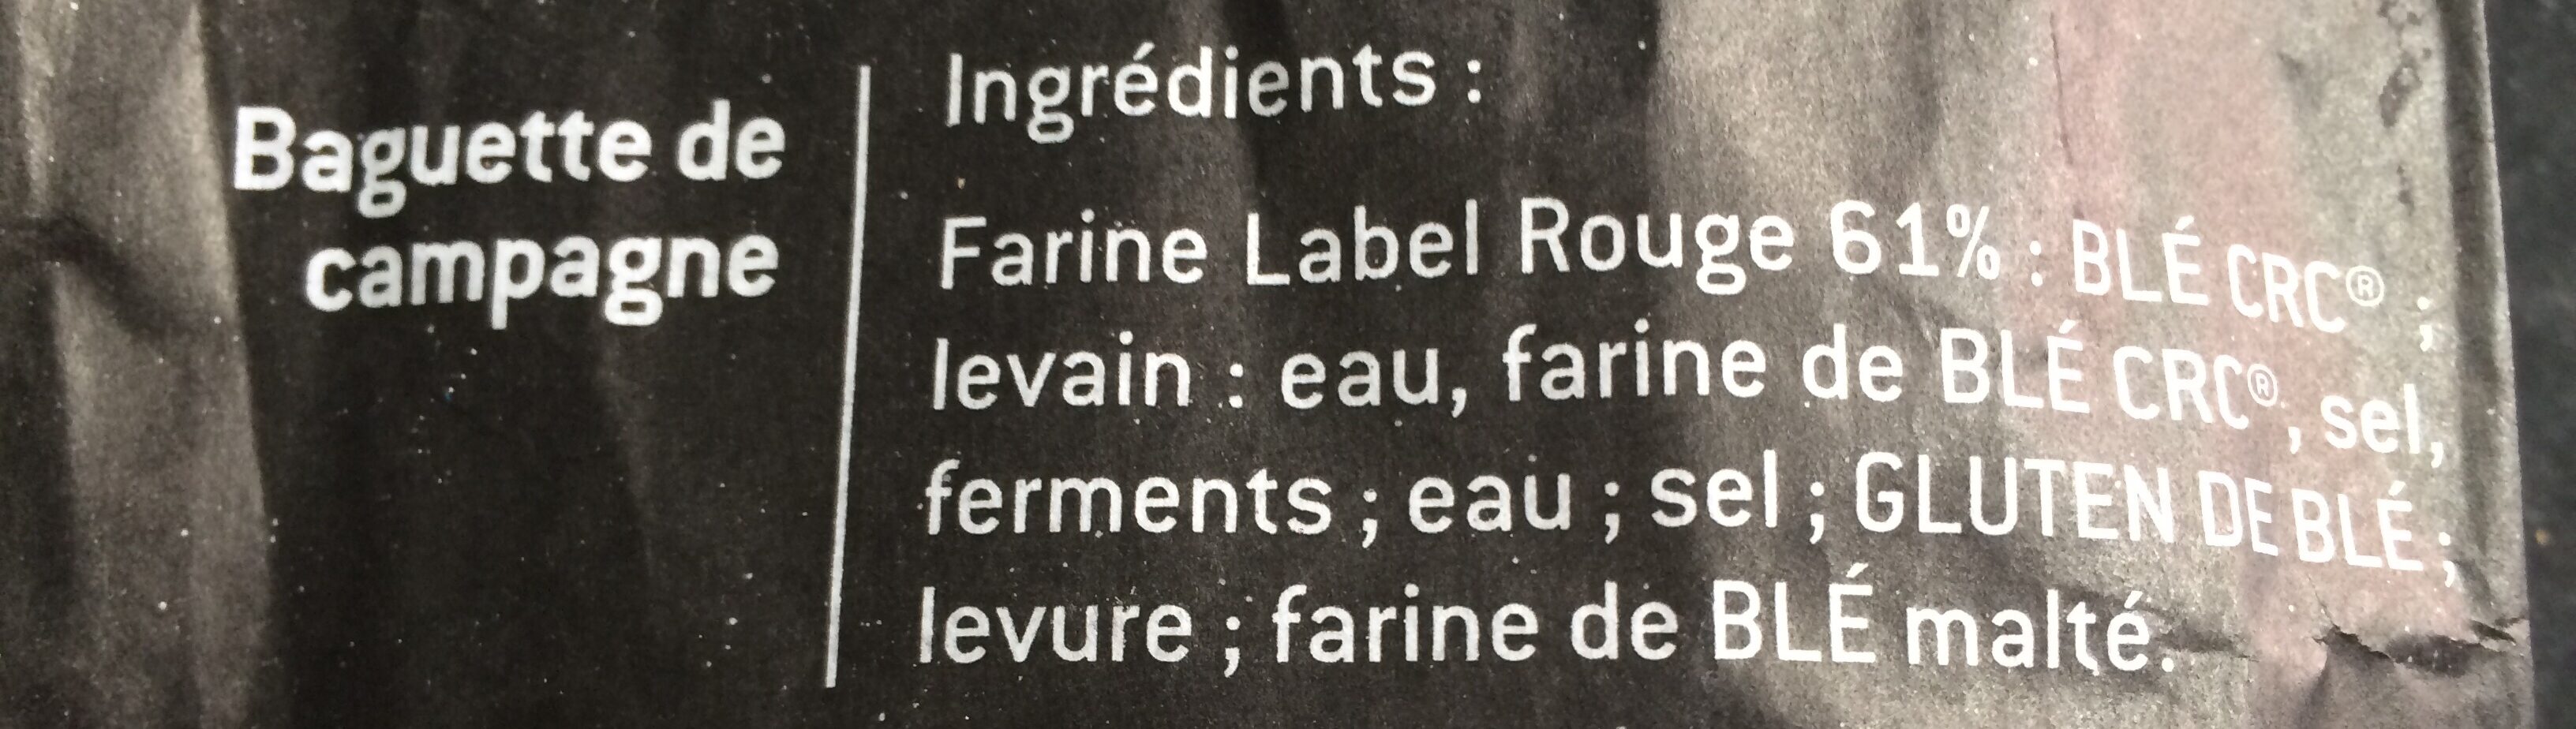 Baguette Pérènes Campagne - Ingrédients